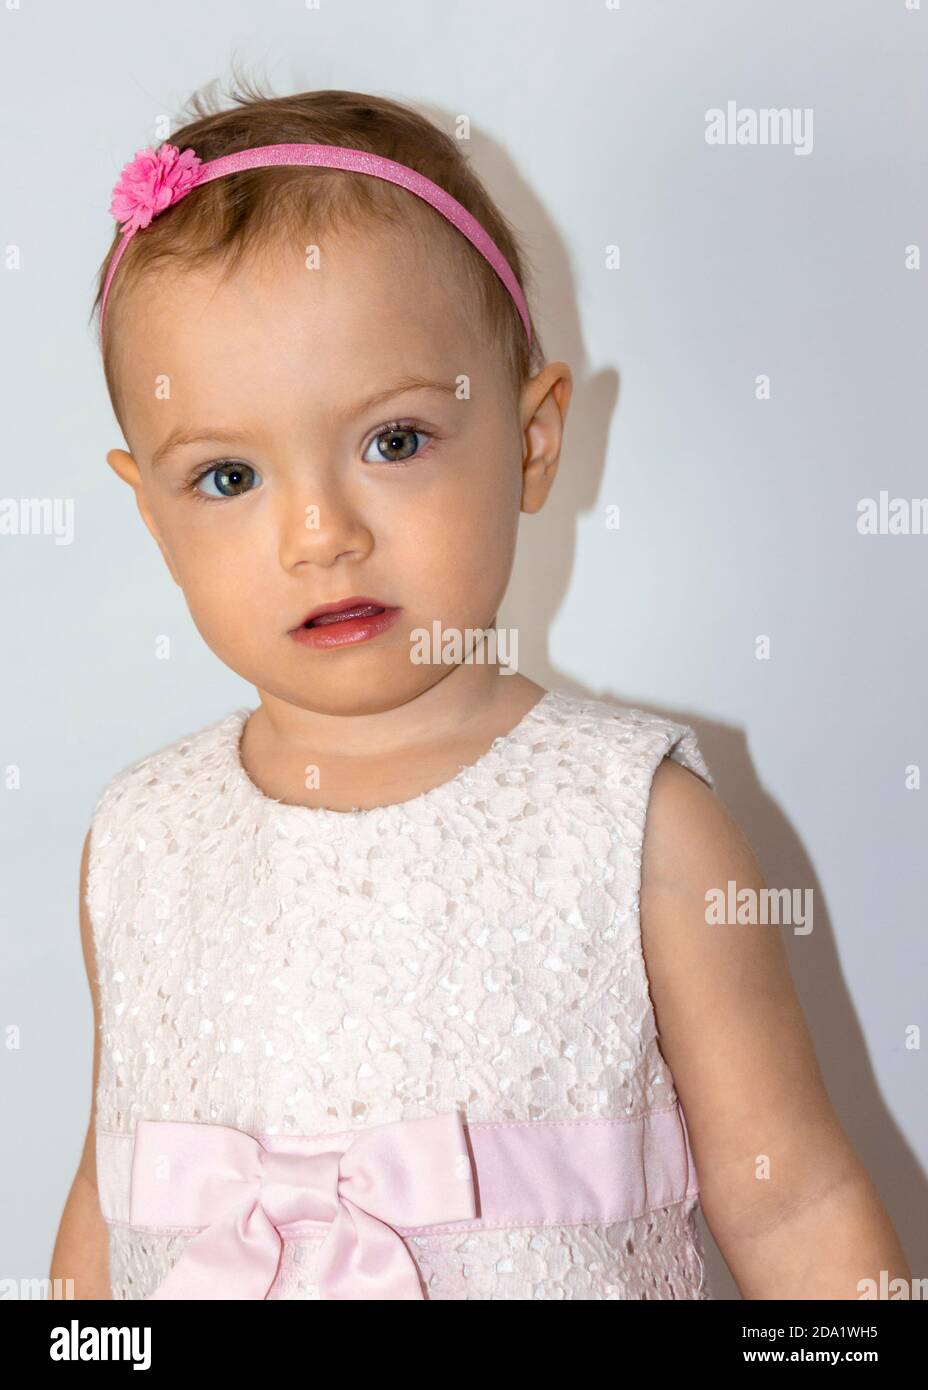 Sehr niedlich 20 Monate alt Kleinkind Porträt. Schöne 1.5 Jahre alte kleine Mädchen, posiert natürlich. Kind trägt niedliches rosa Kleid und Stirnband. Stockfoto